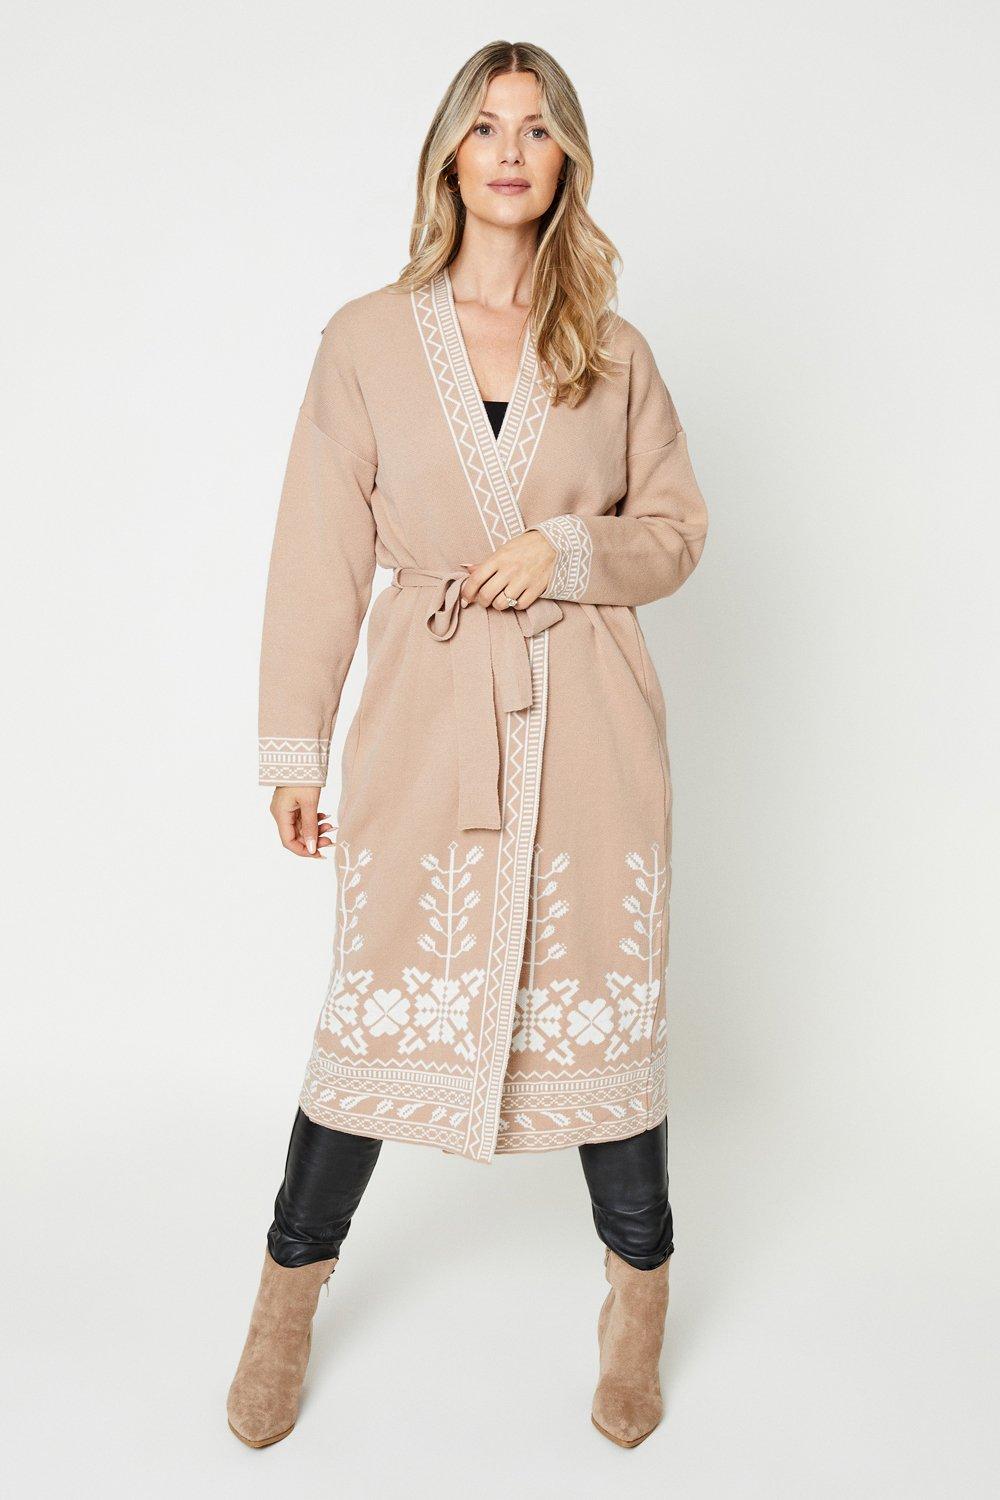 Women's Jacquard Pattern Premium Cardigan - taupe - XL